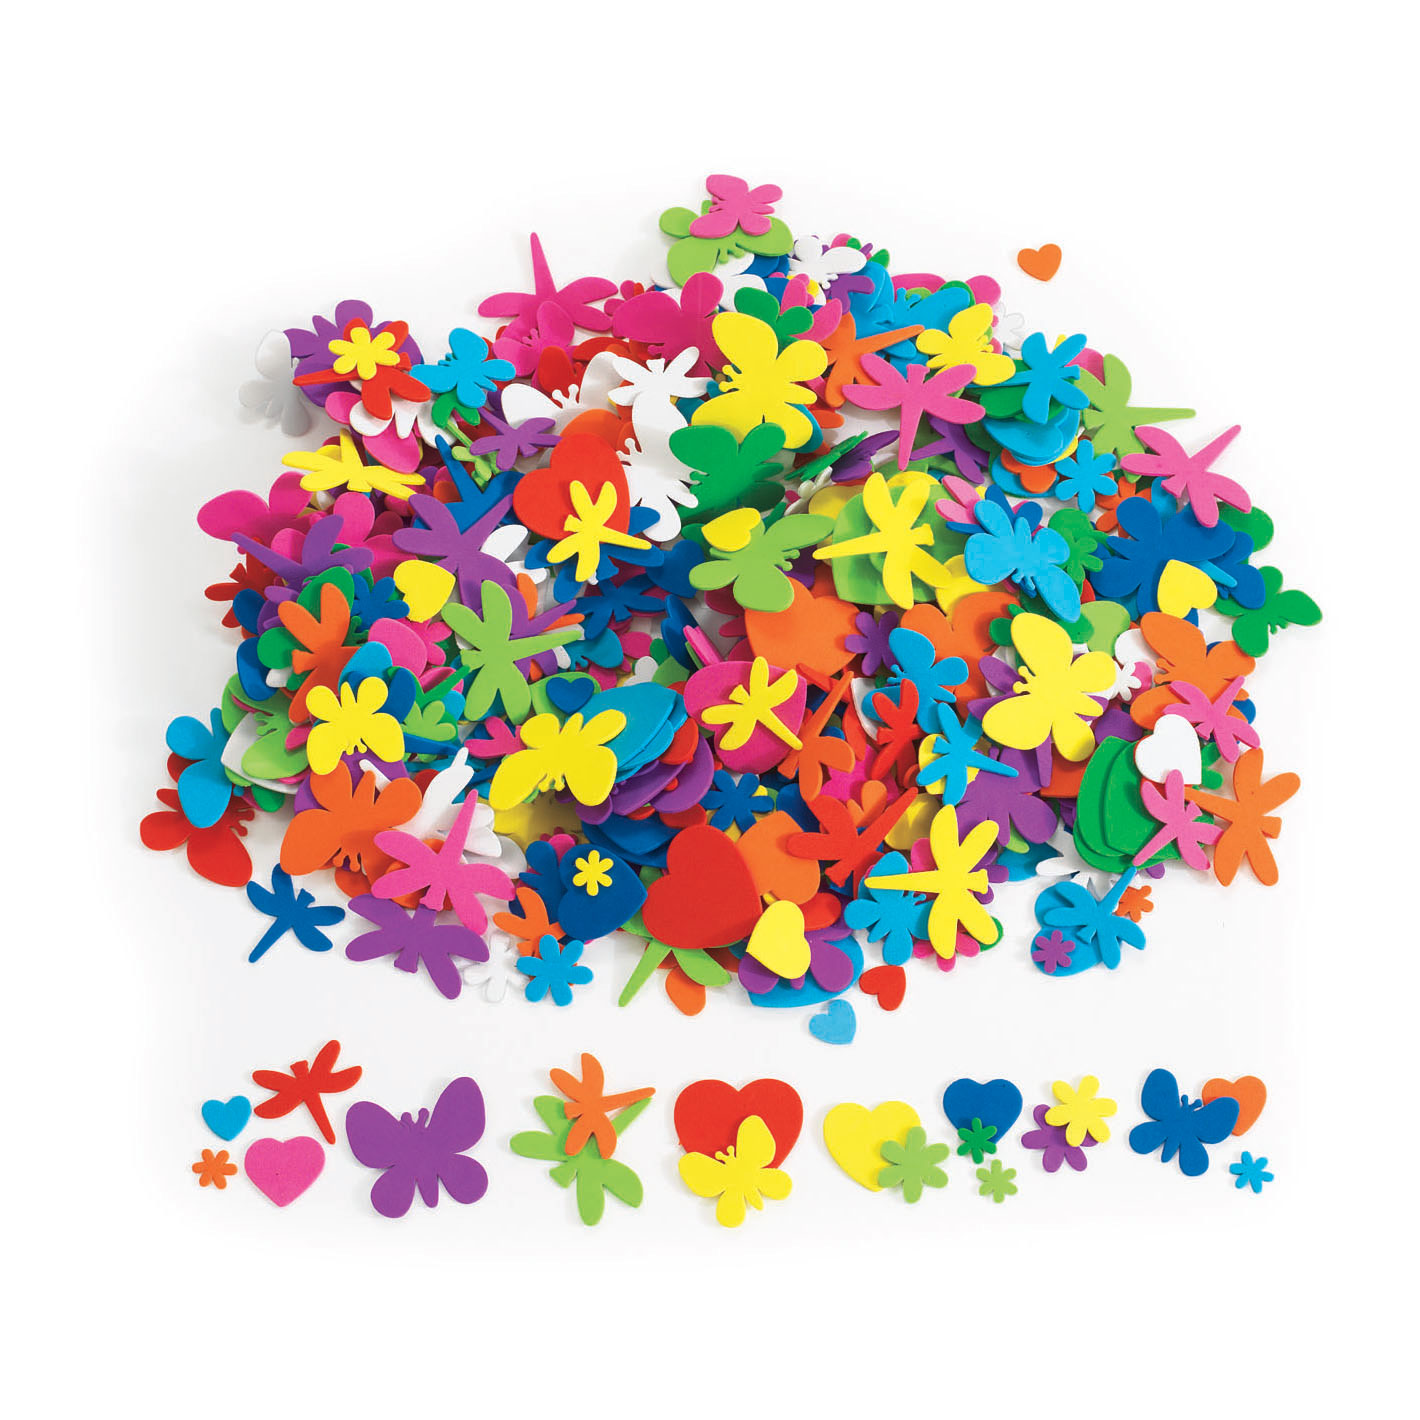 Färbungen – Blumen-, Herz- und Insektenformen aus Schaumstoff, 500 Stück.